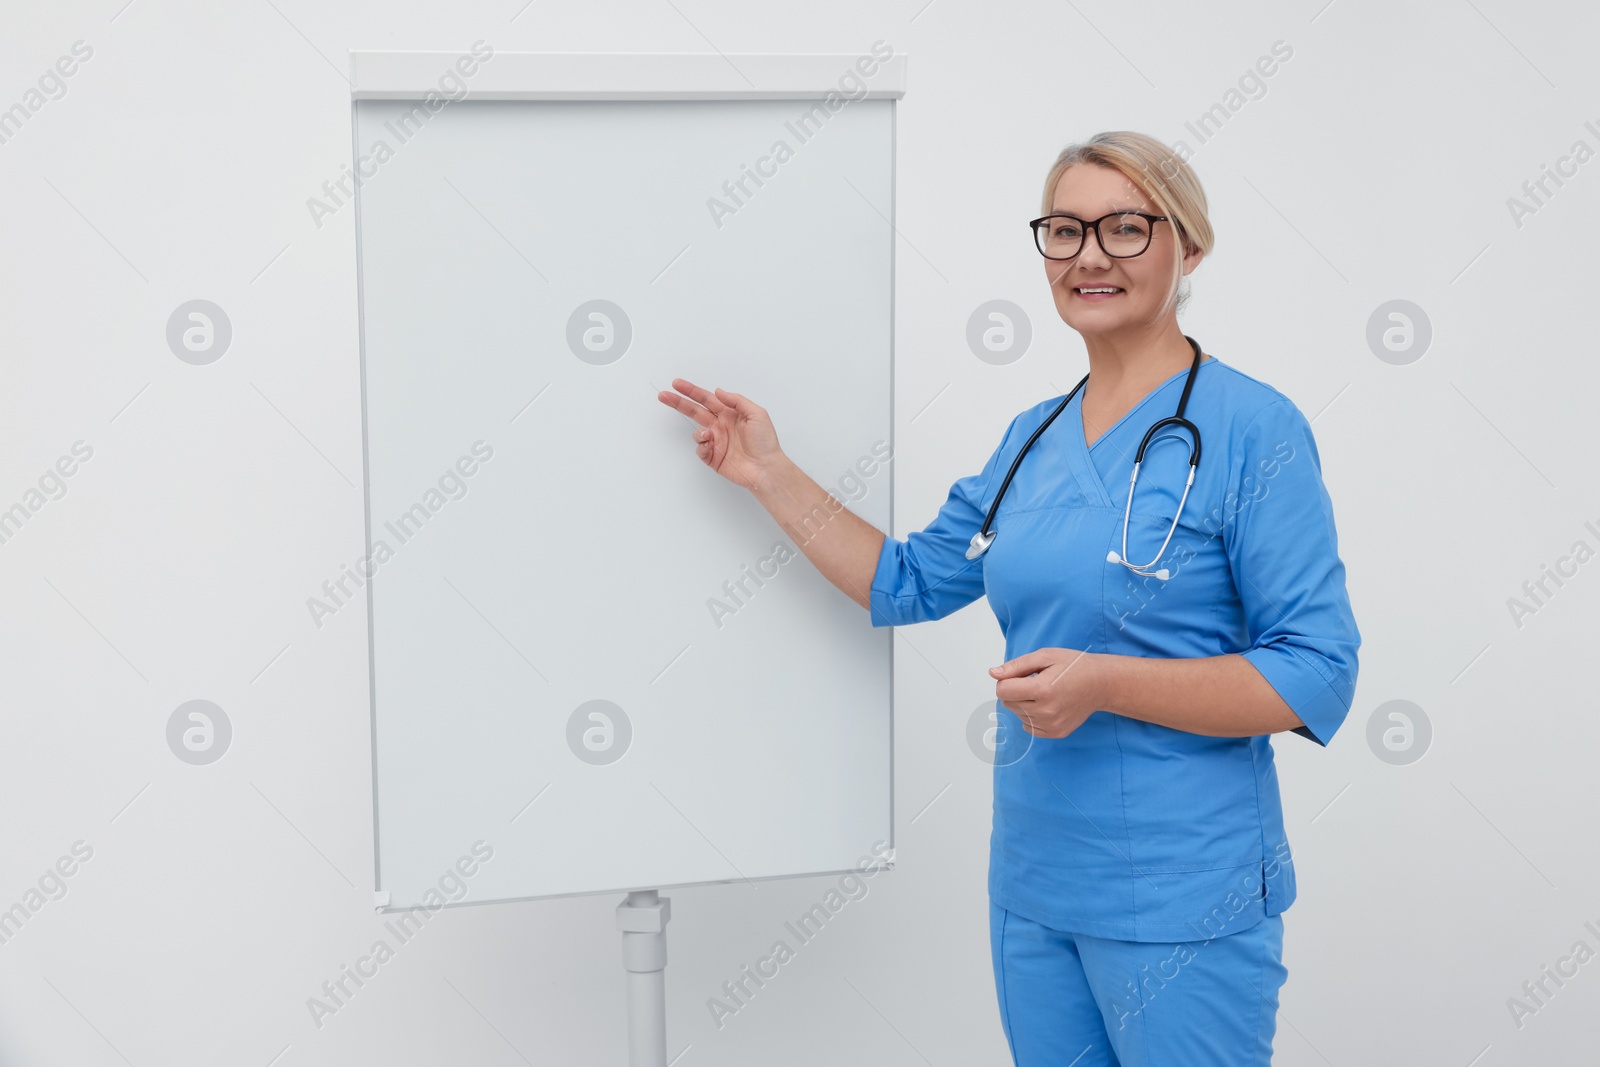 Photo of Professional doctor explaining something near flipchart indoors